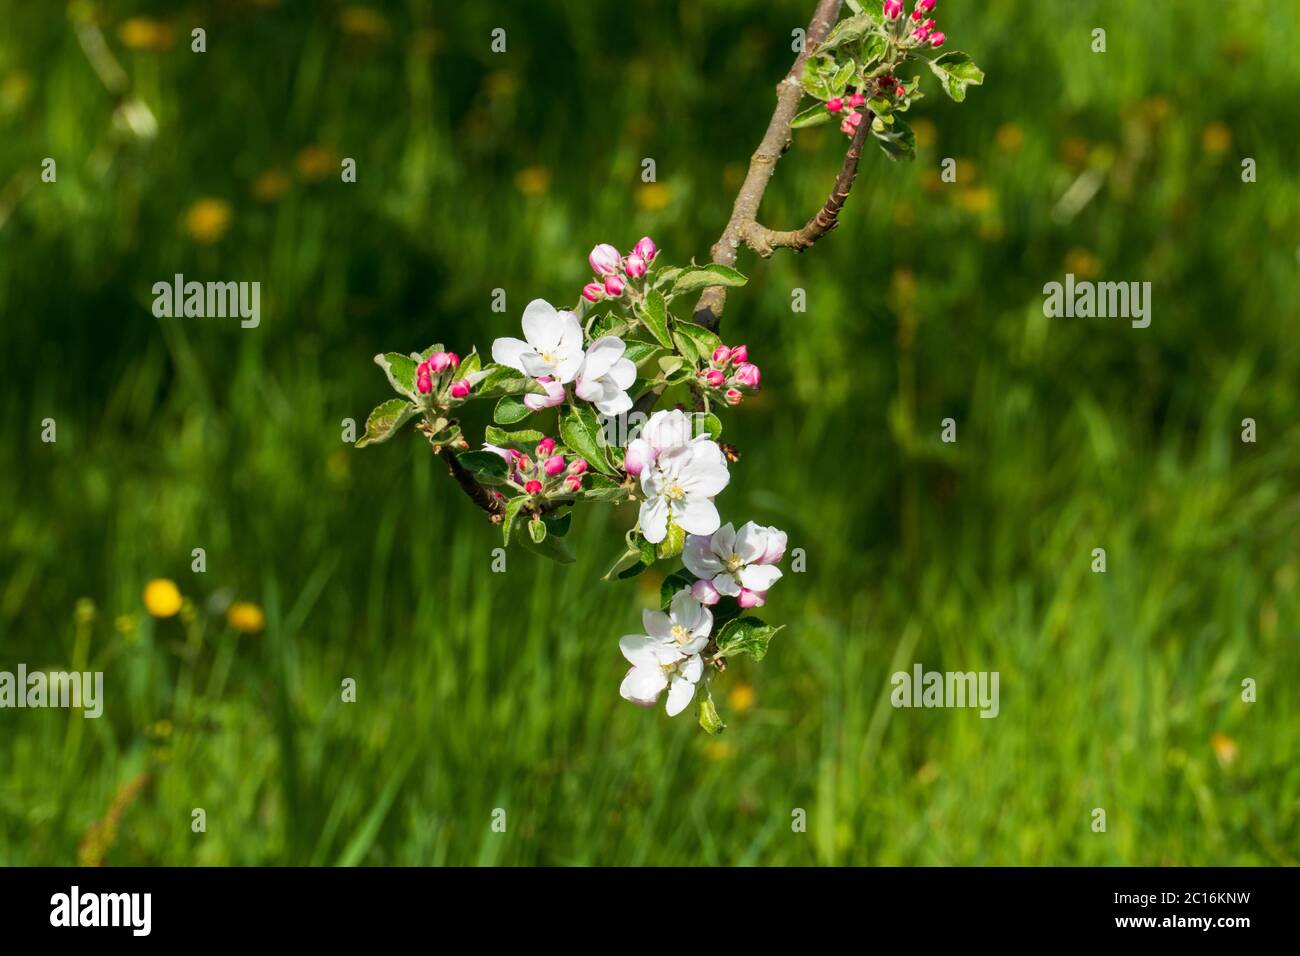 Apelblüte in weiß, pink mit unscharfem Hintergrund Stock Photo